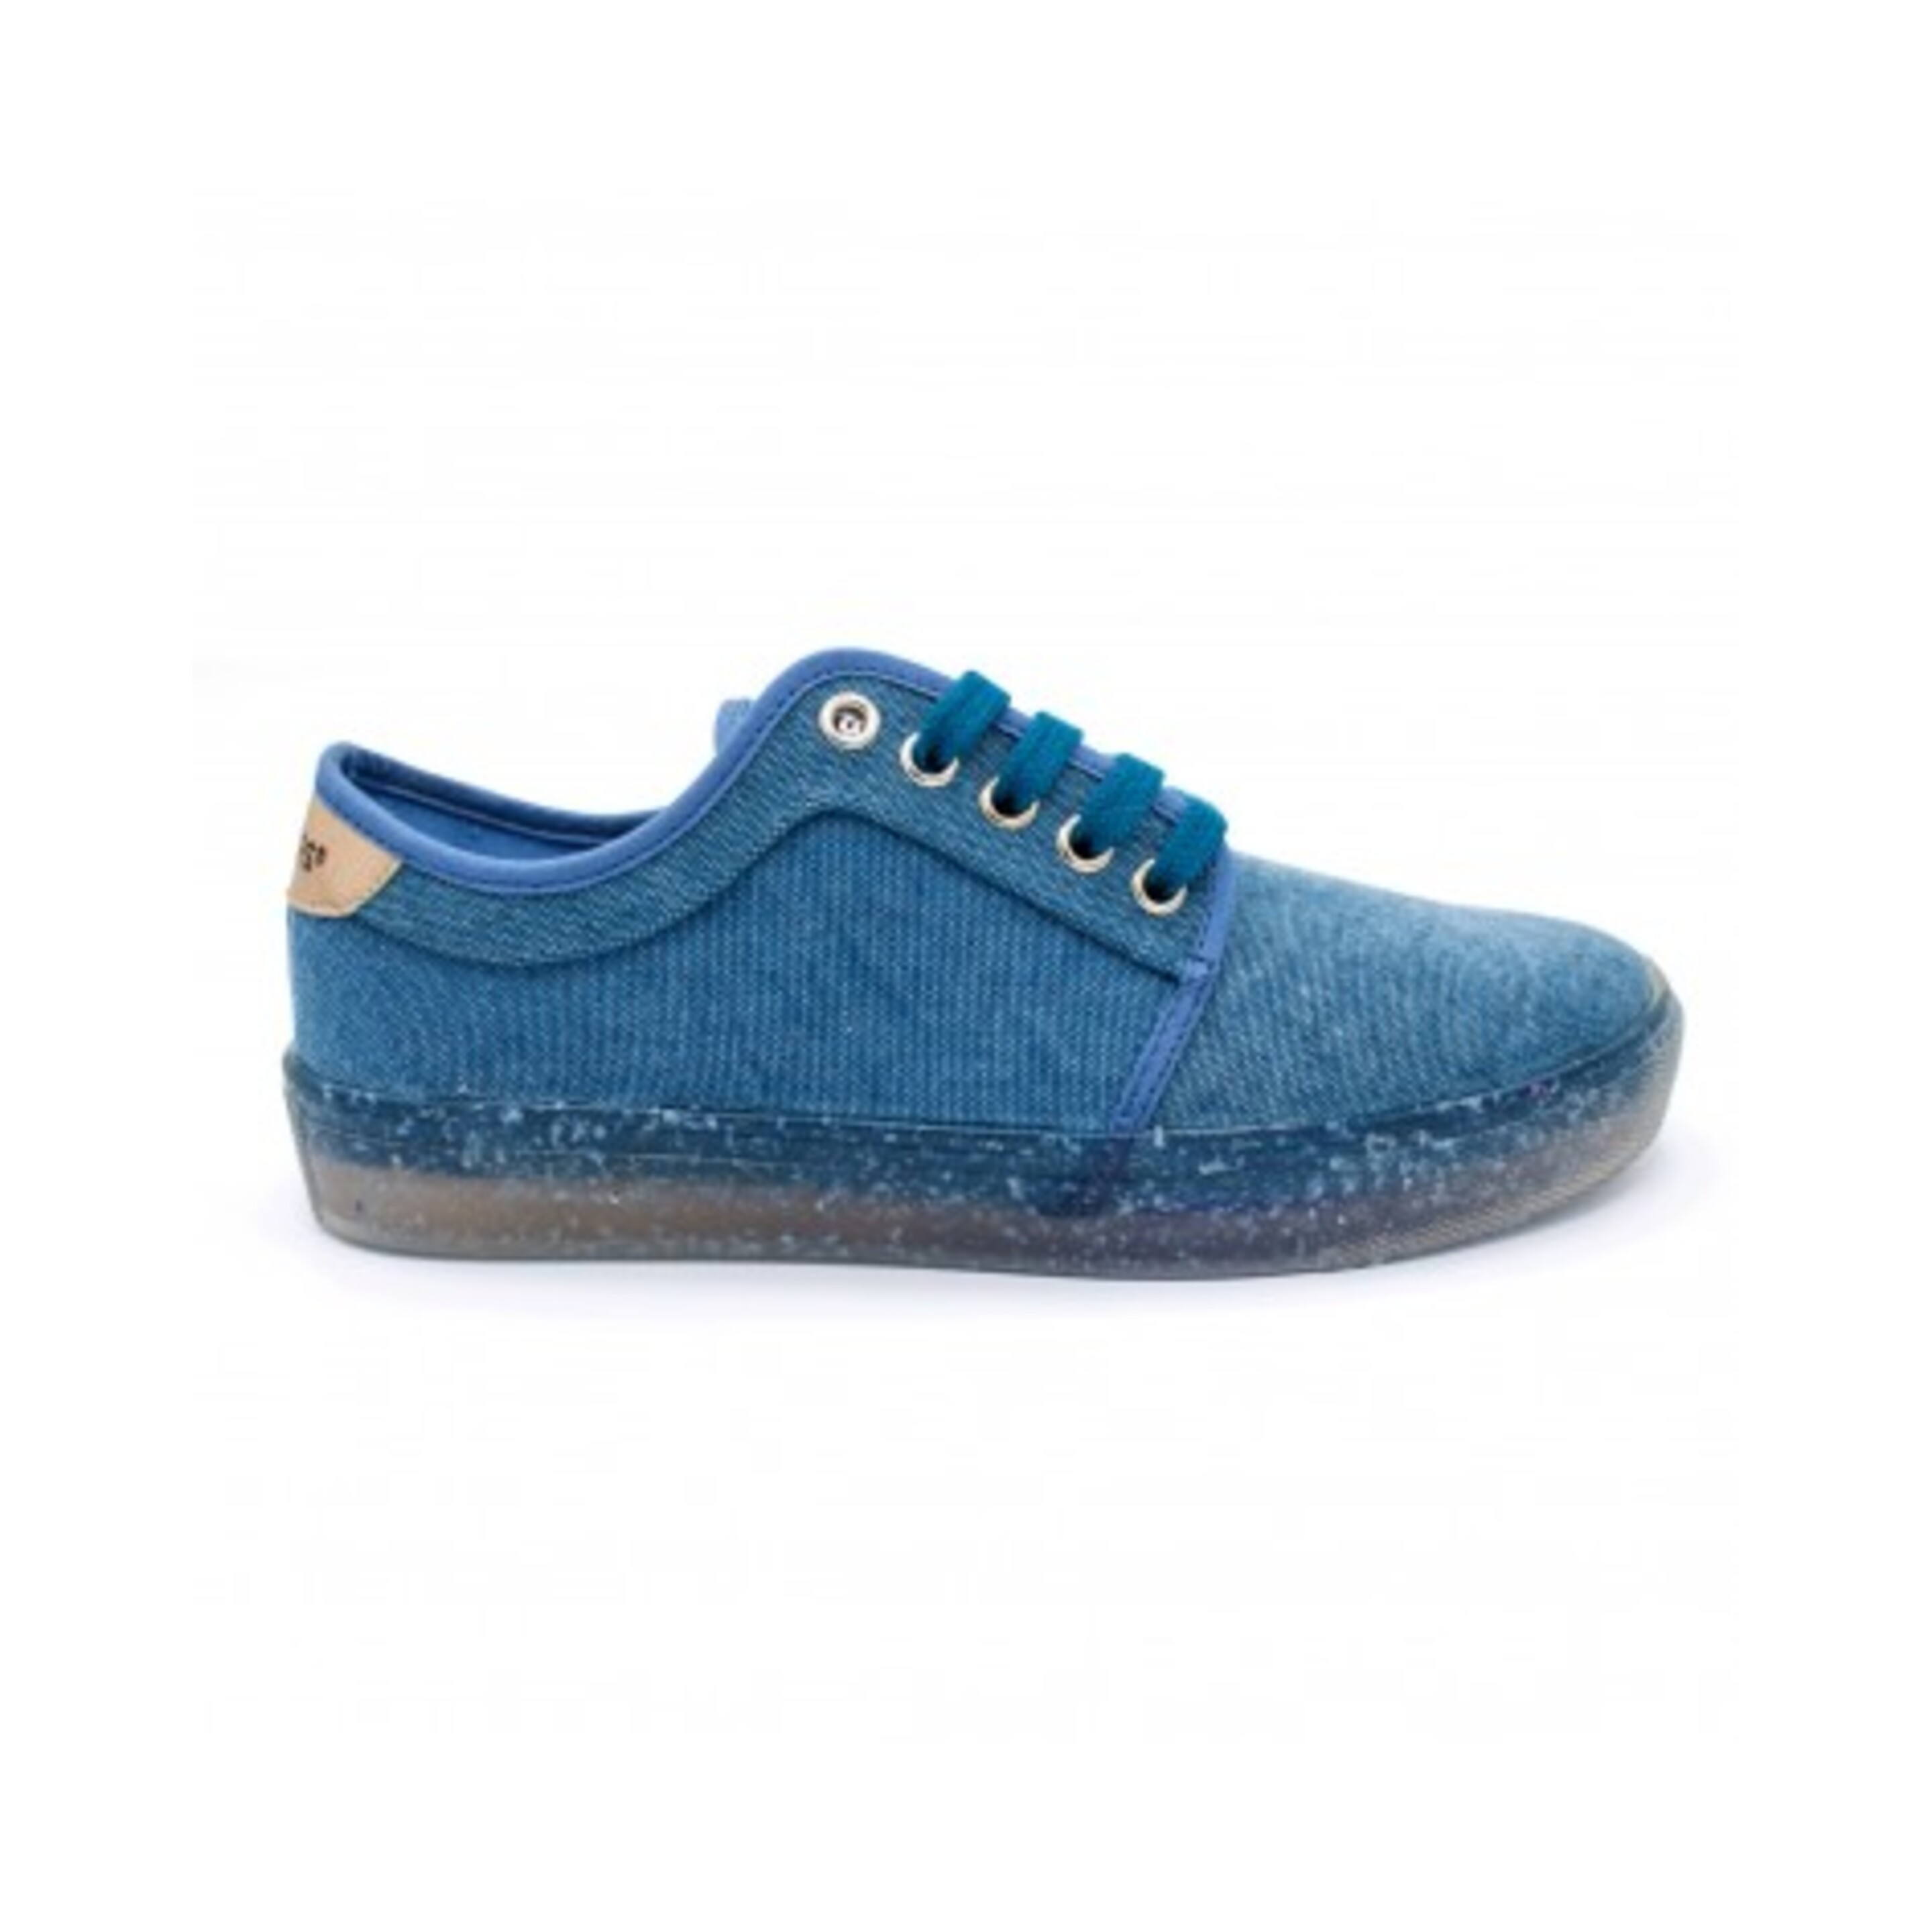 Sneaker Recykers Peckham - azul-denim - 